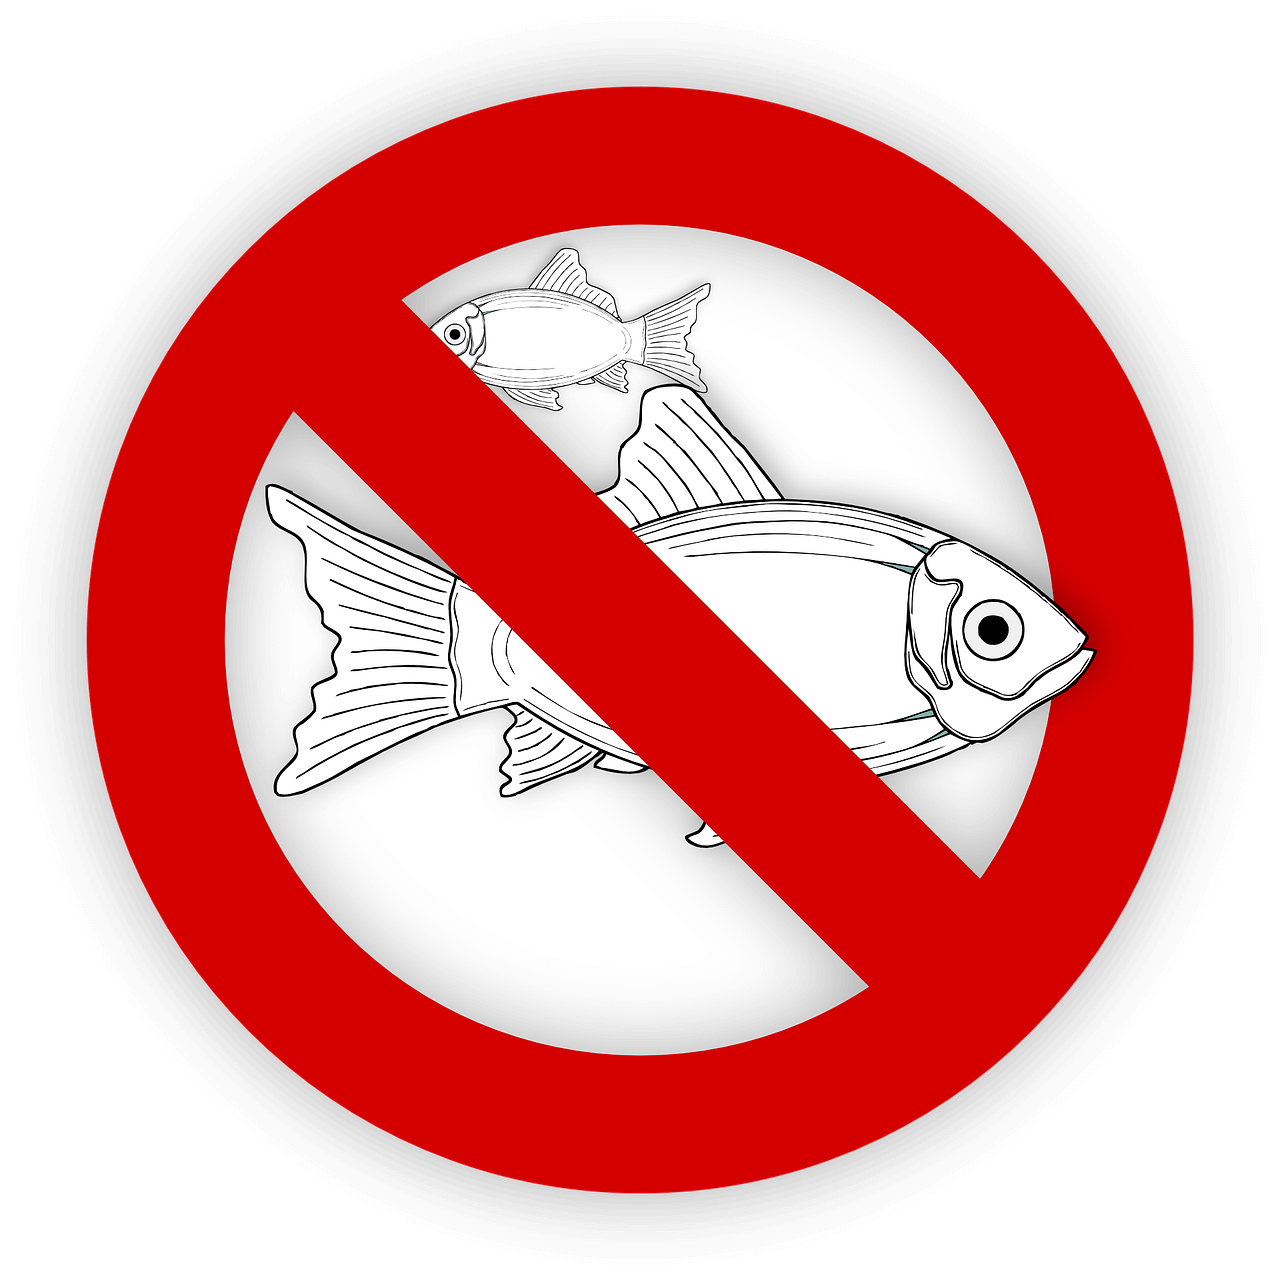 Табличка запрета на рыбу. Рыба запрещена. Ловля рыбы запрещена знак. Перечеркнутая рыба.